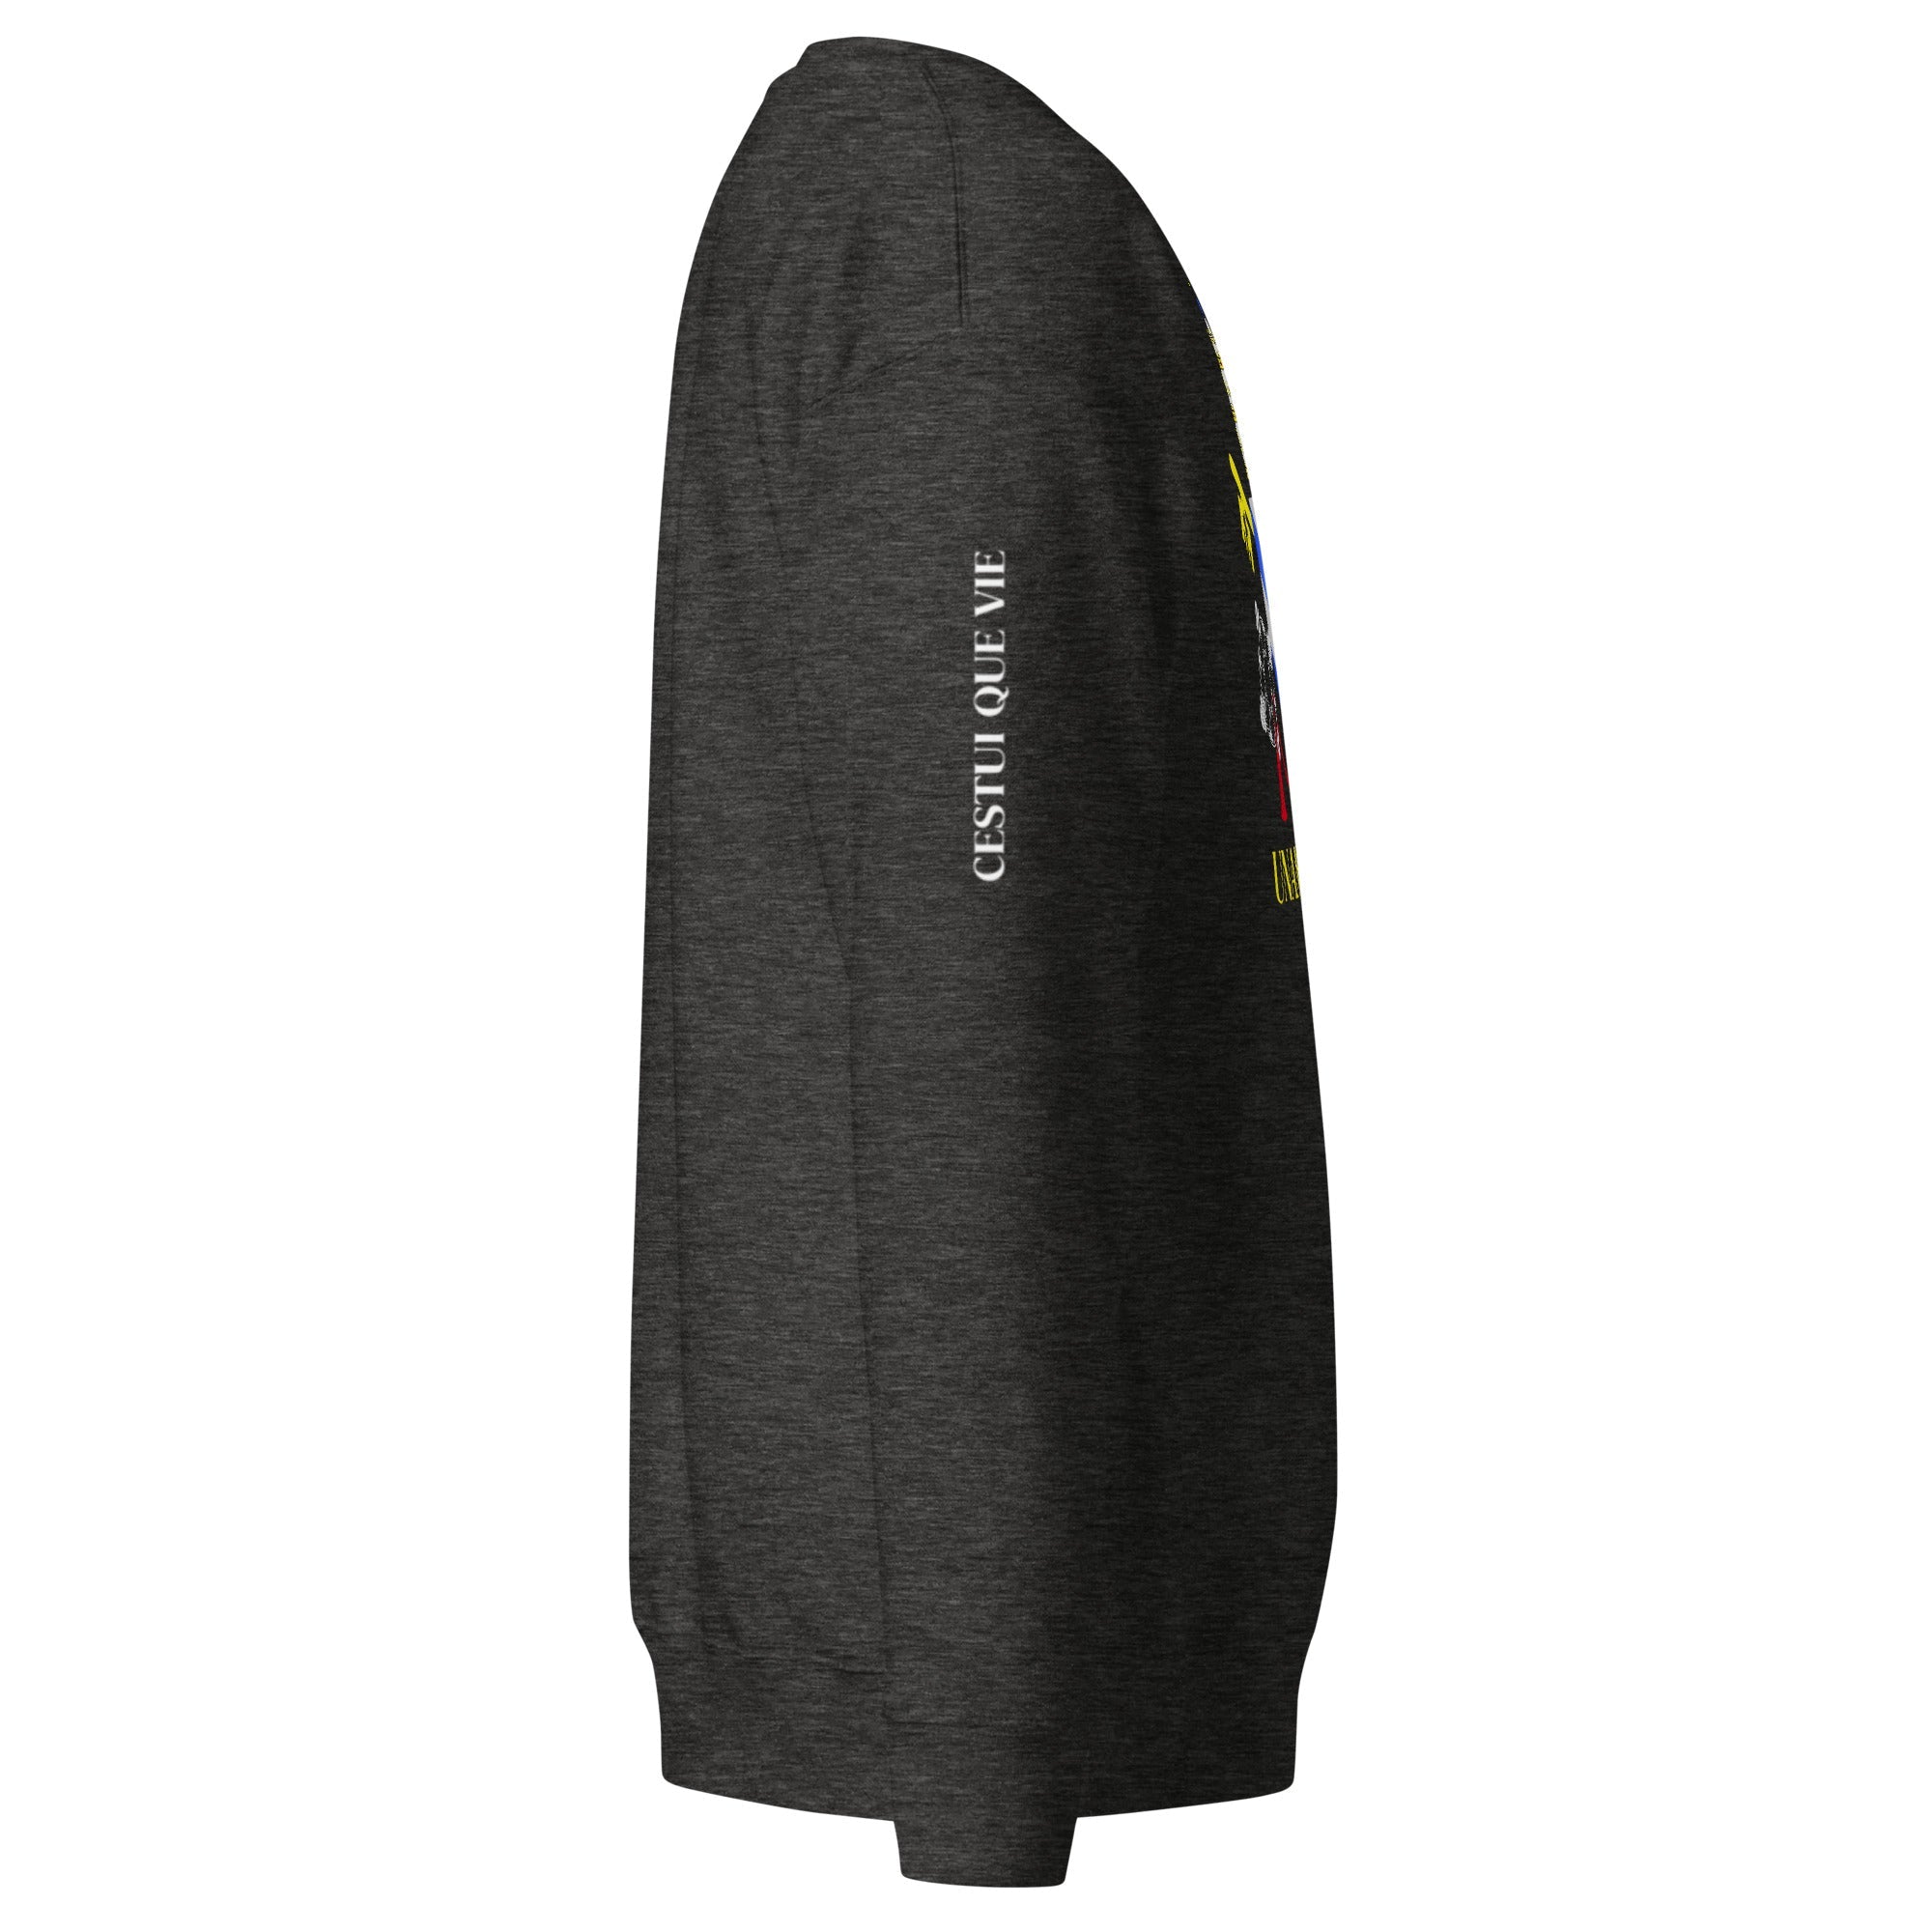 Unisex Premium Sweatshirt - Unam Sanctam Cestui Que Vie - GRAPHIC T-SHIRTS